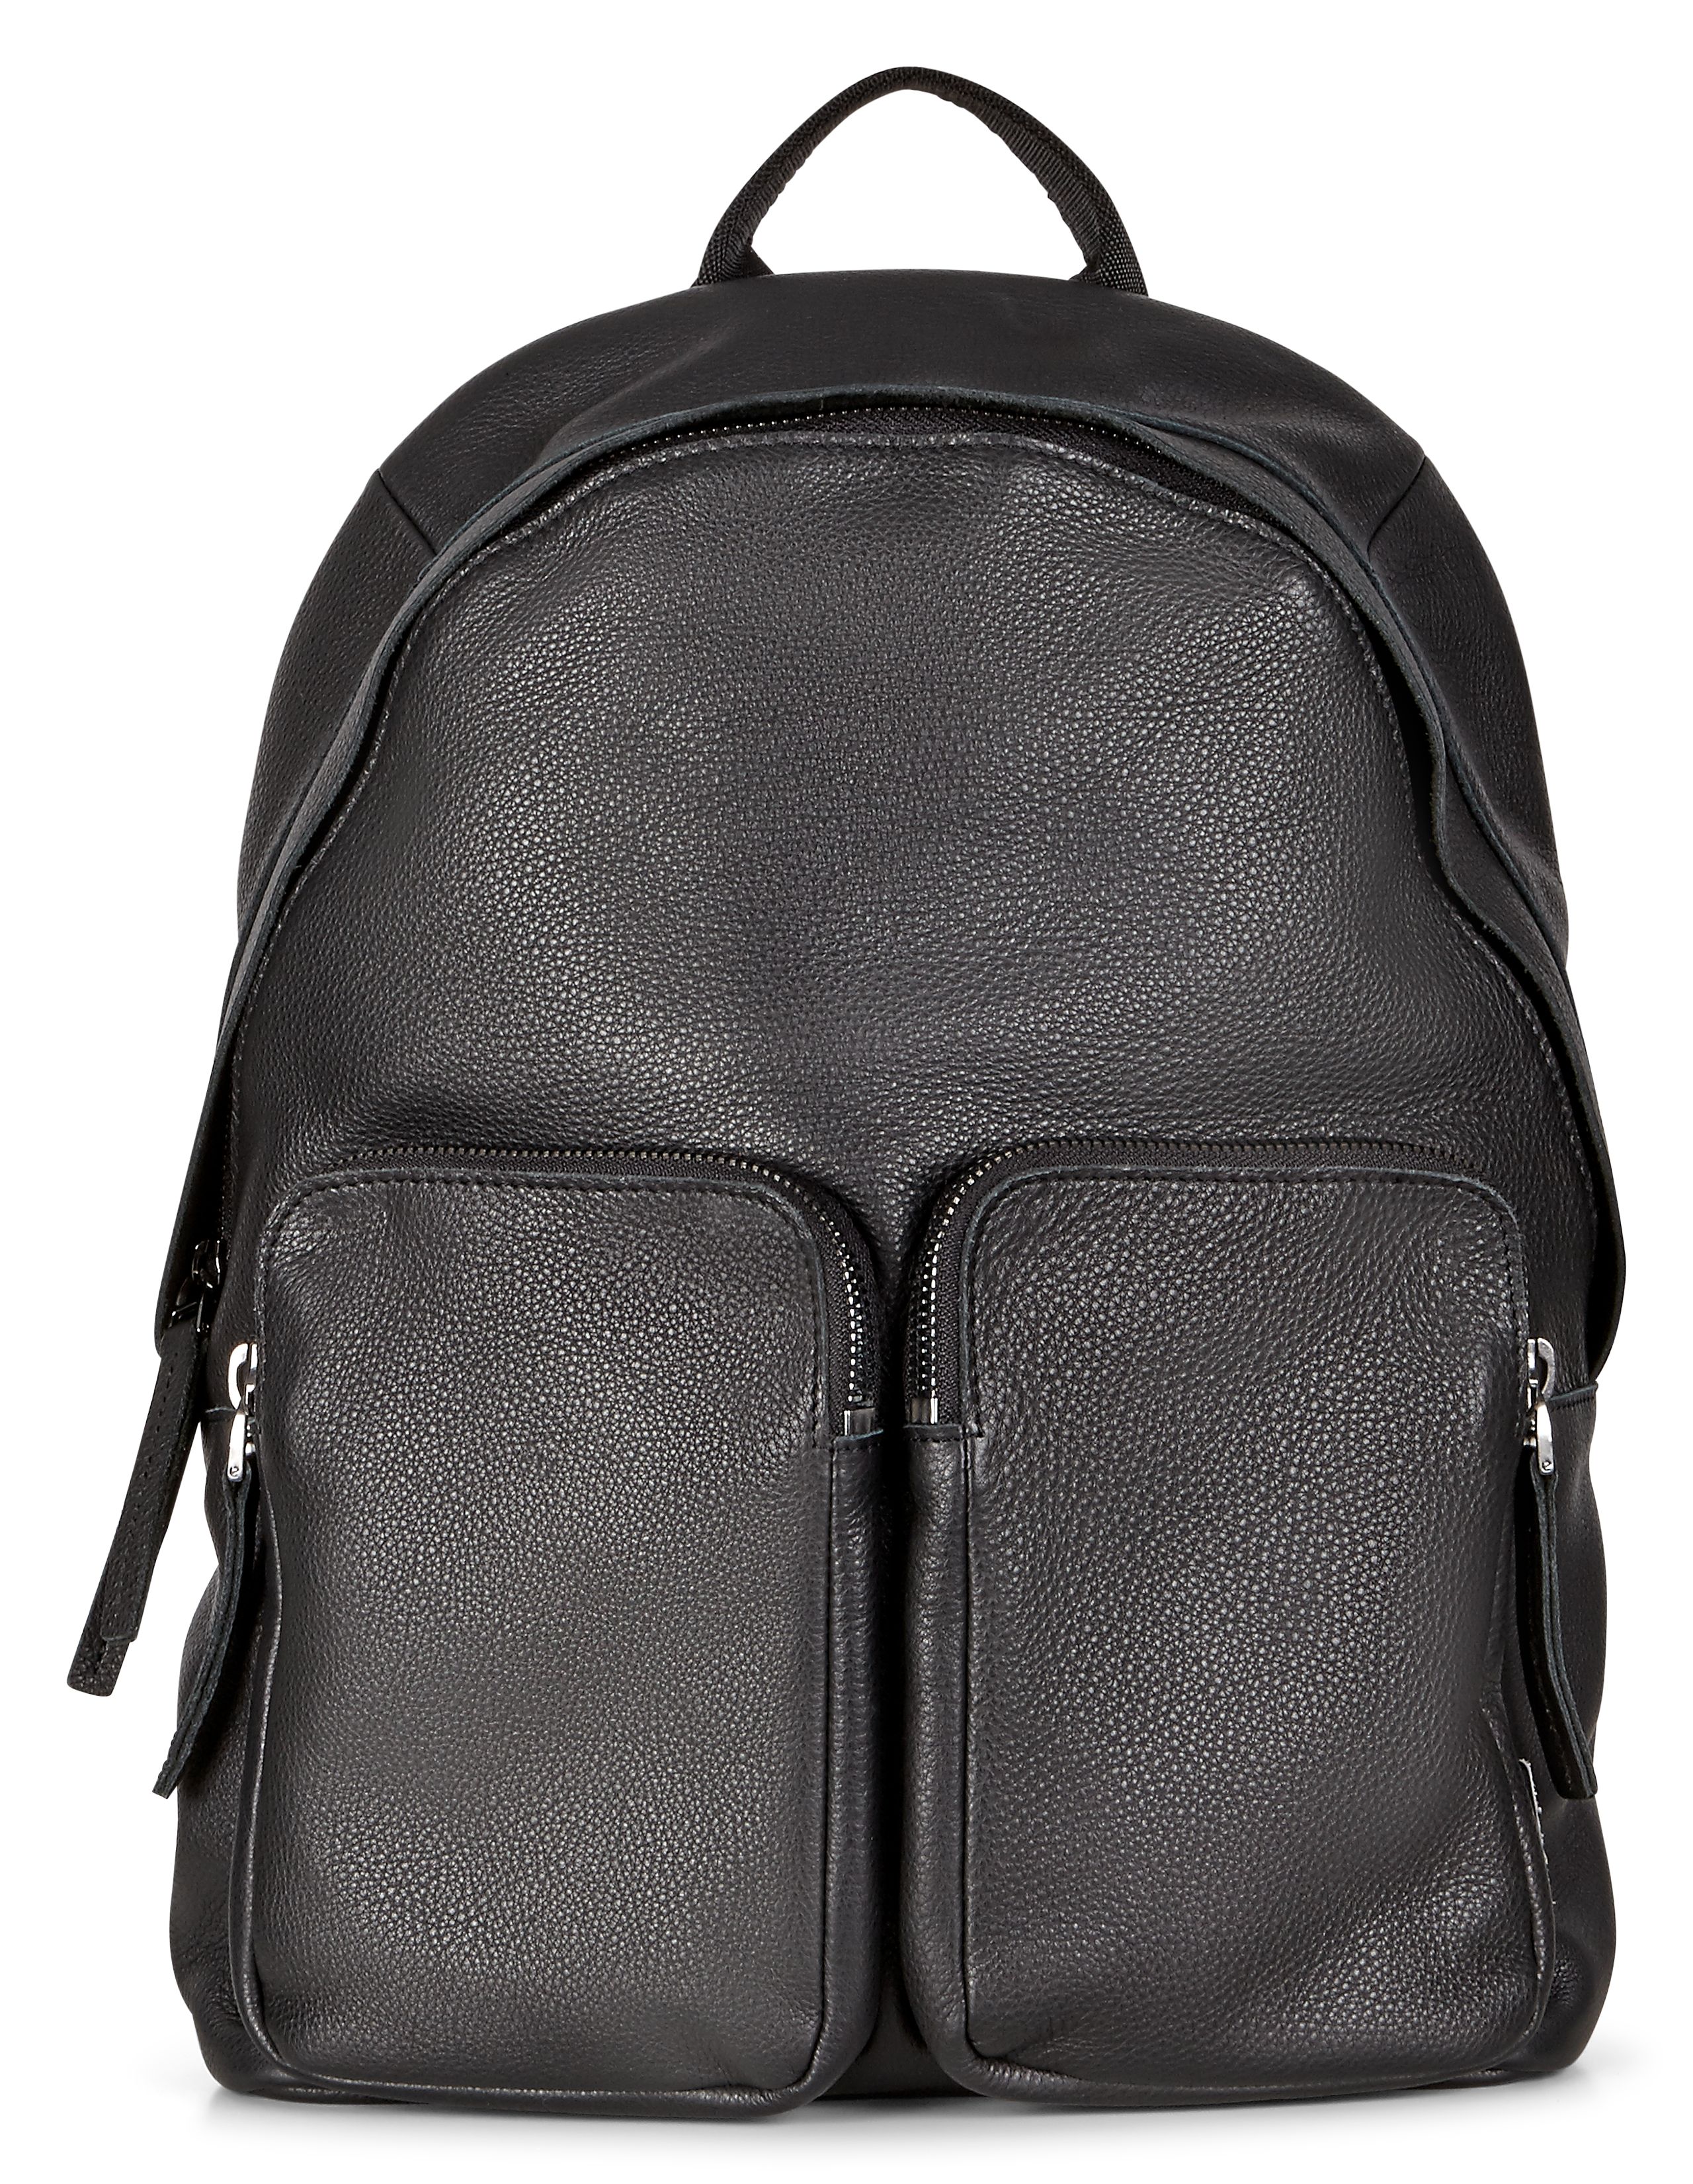 Casper Small Backpack - ECCO.com